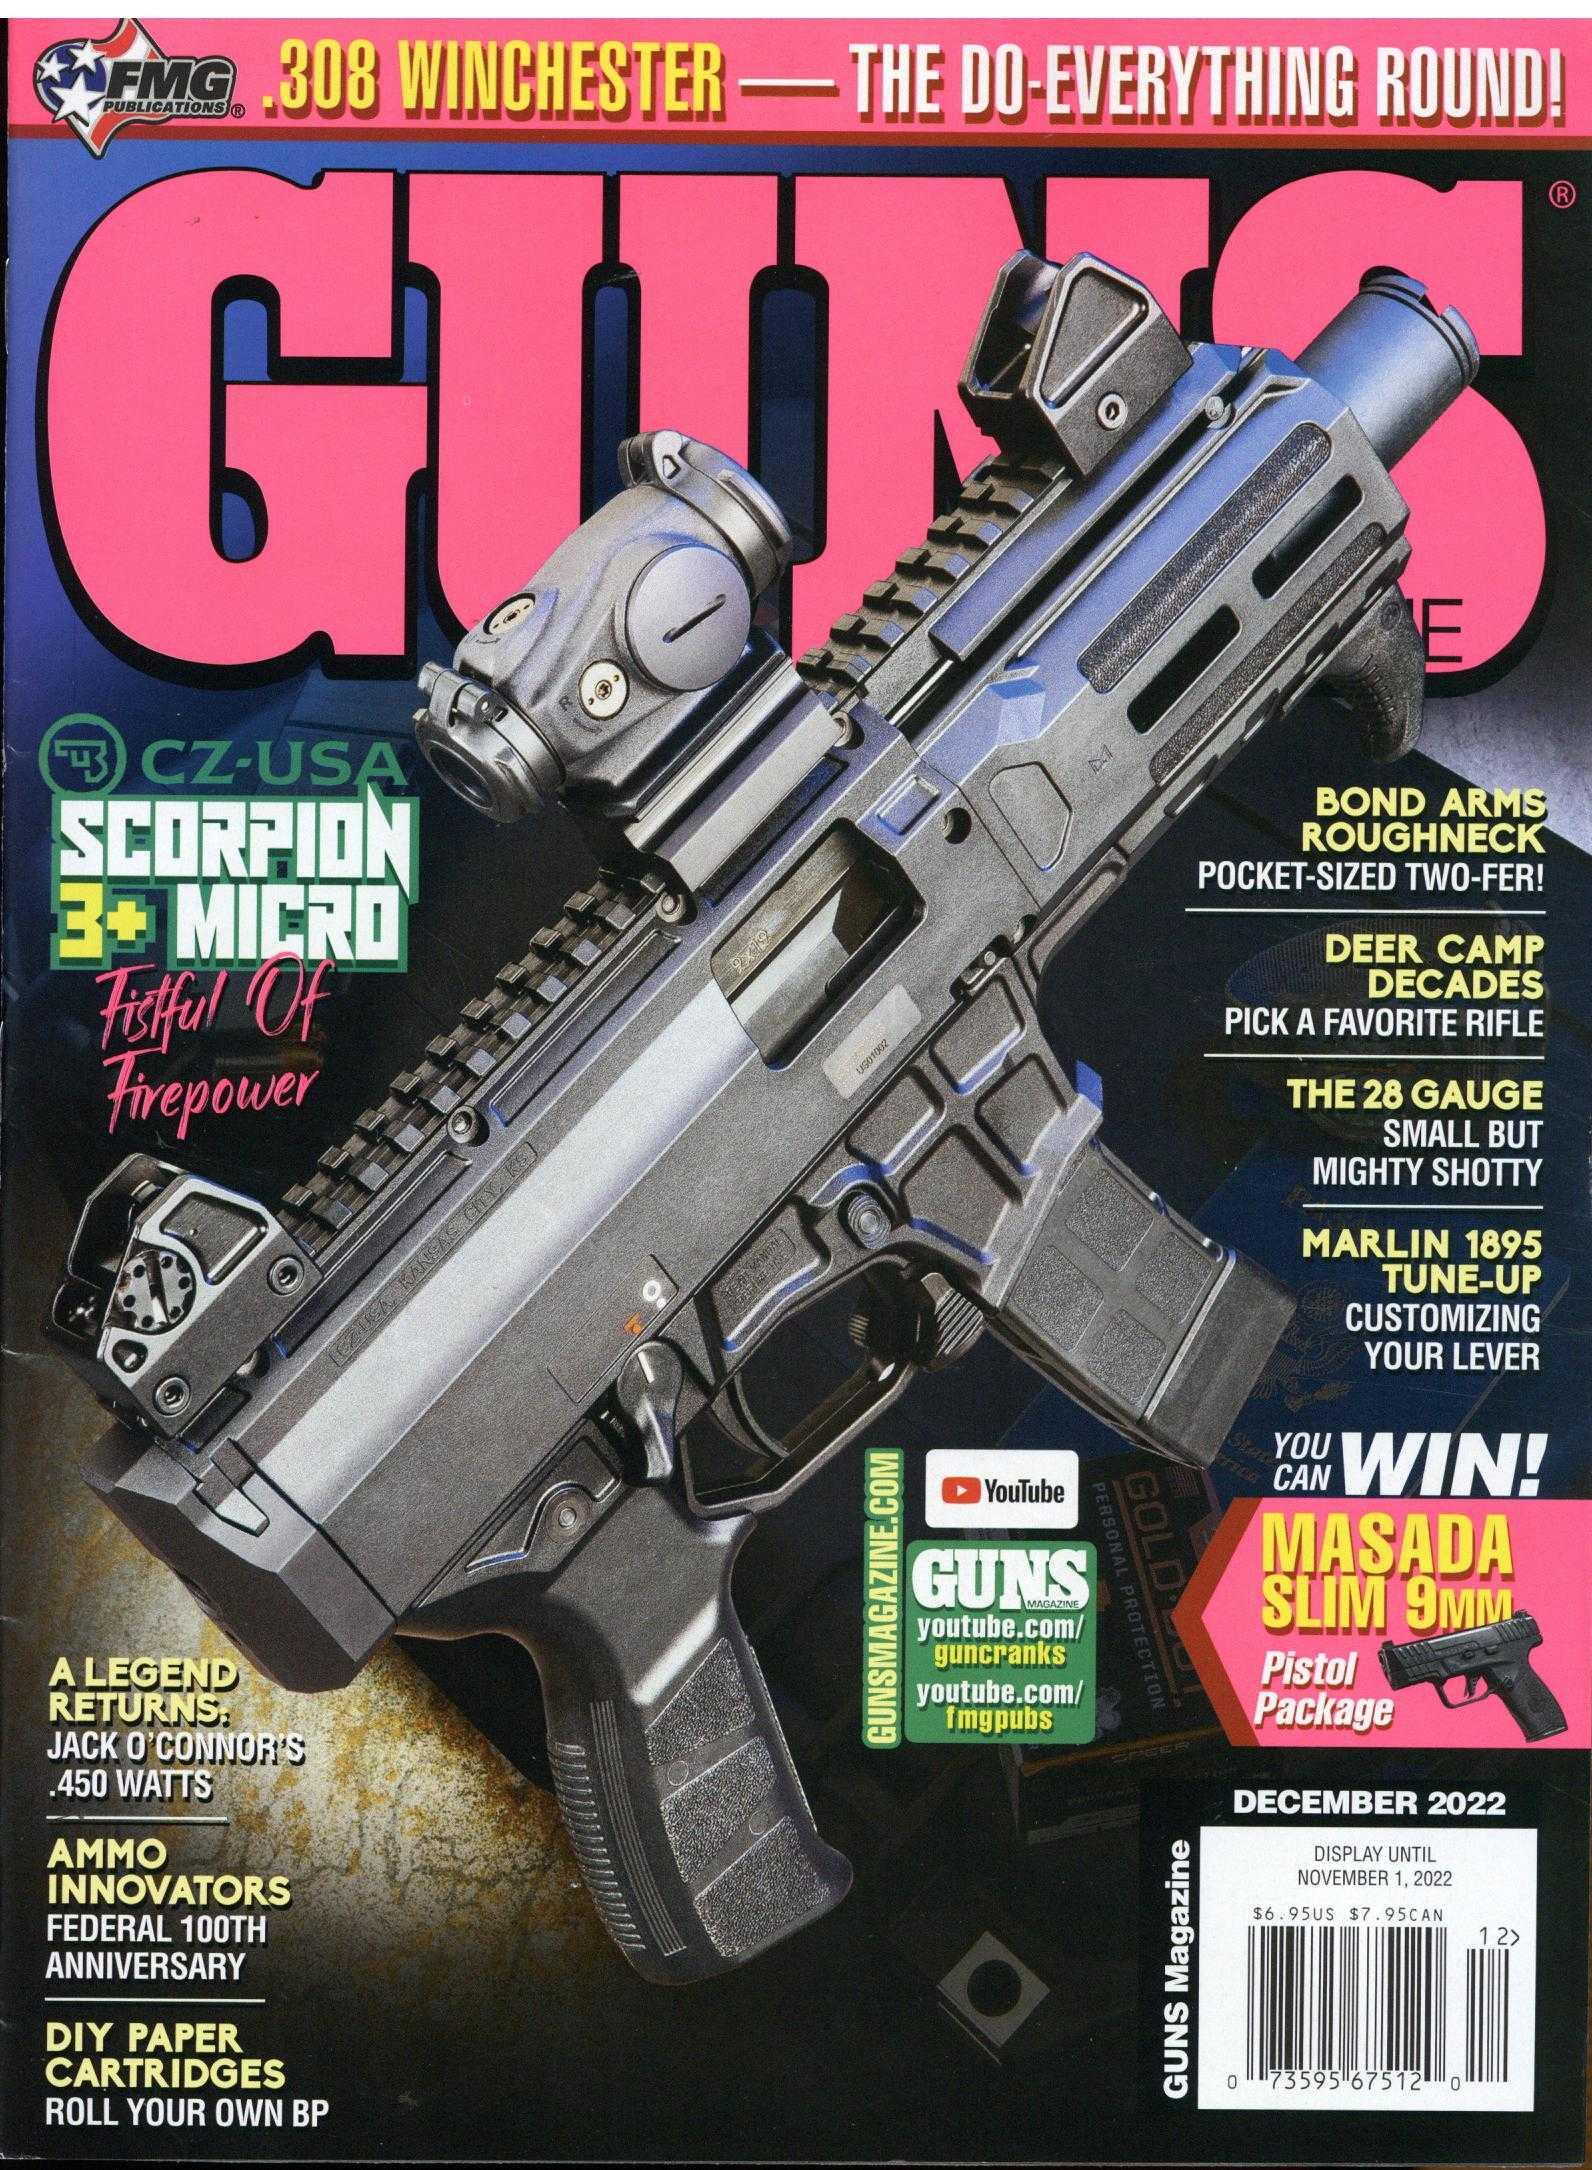 Guns Magazine